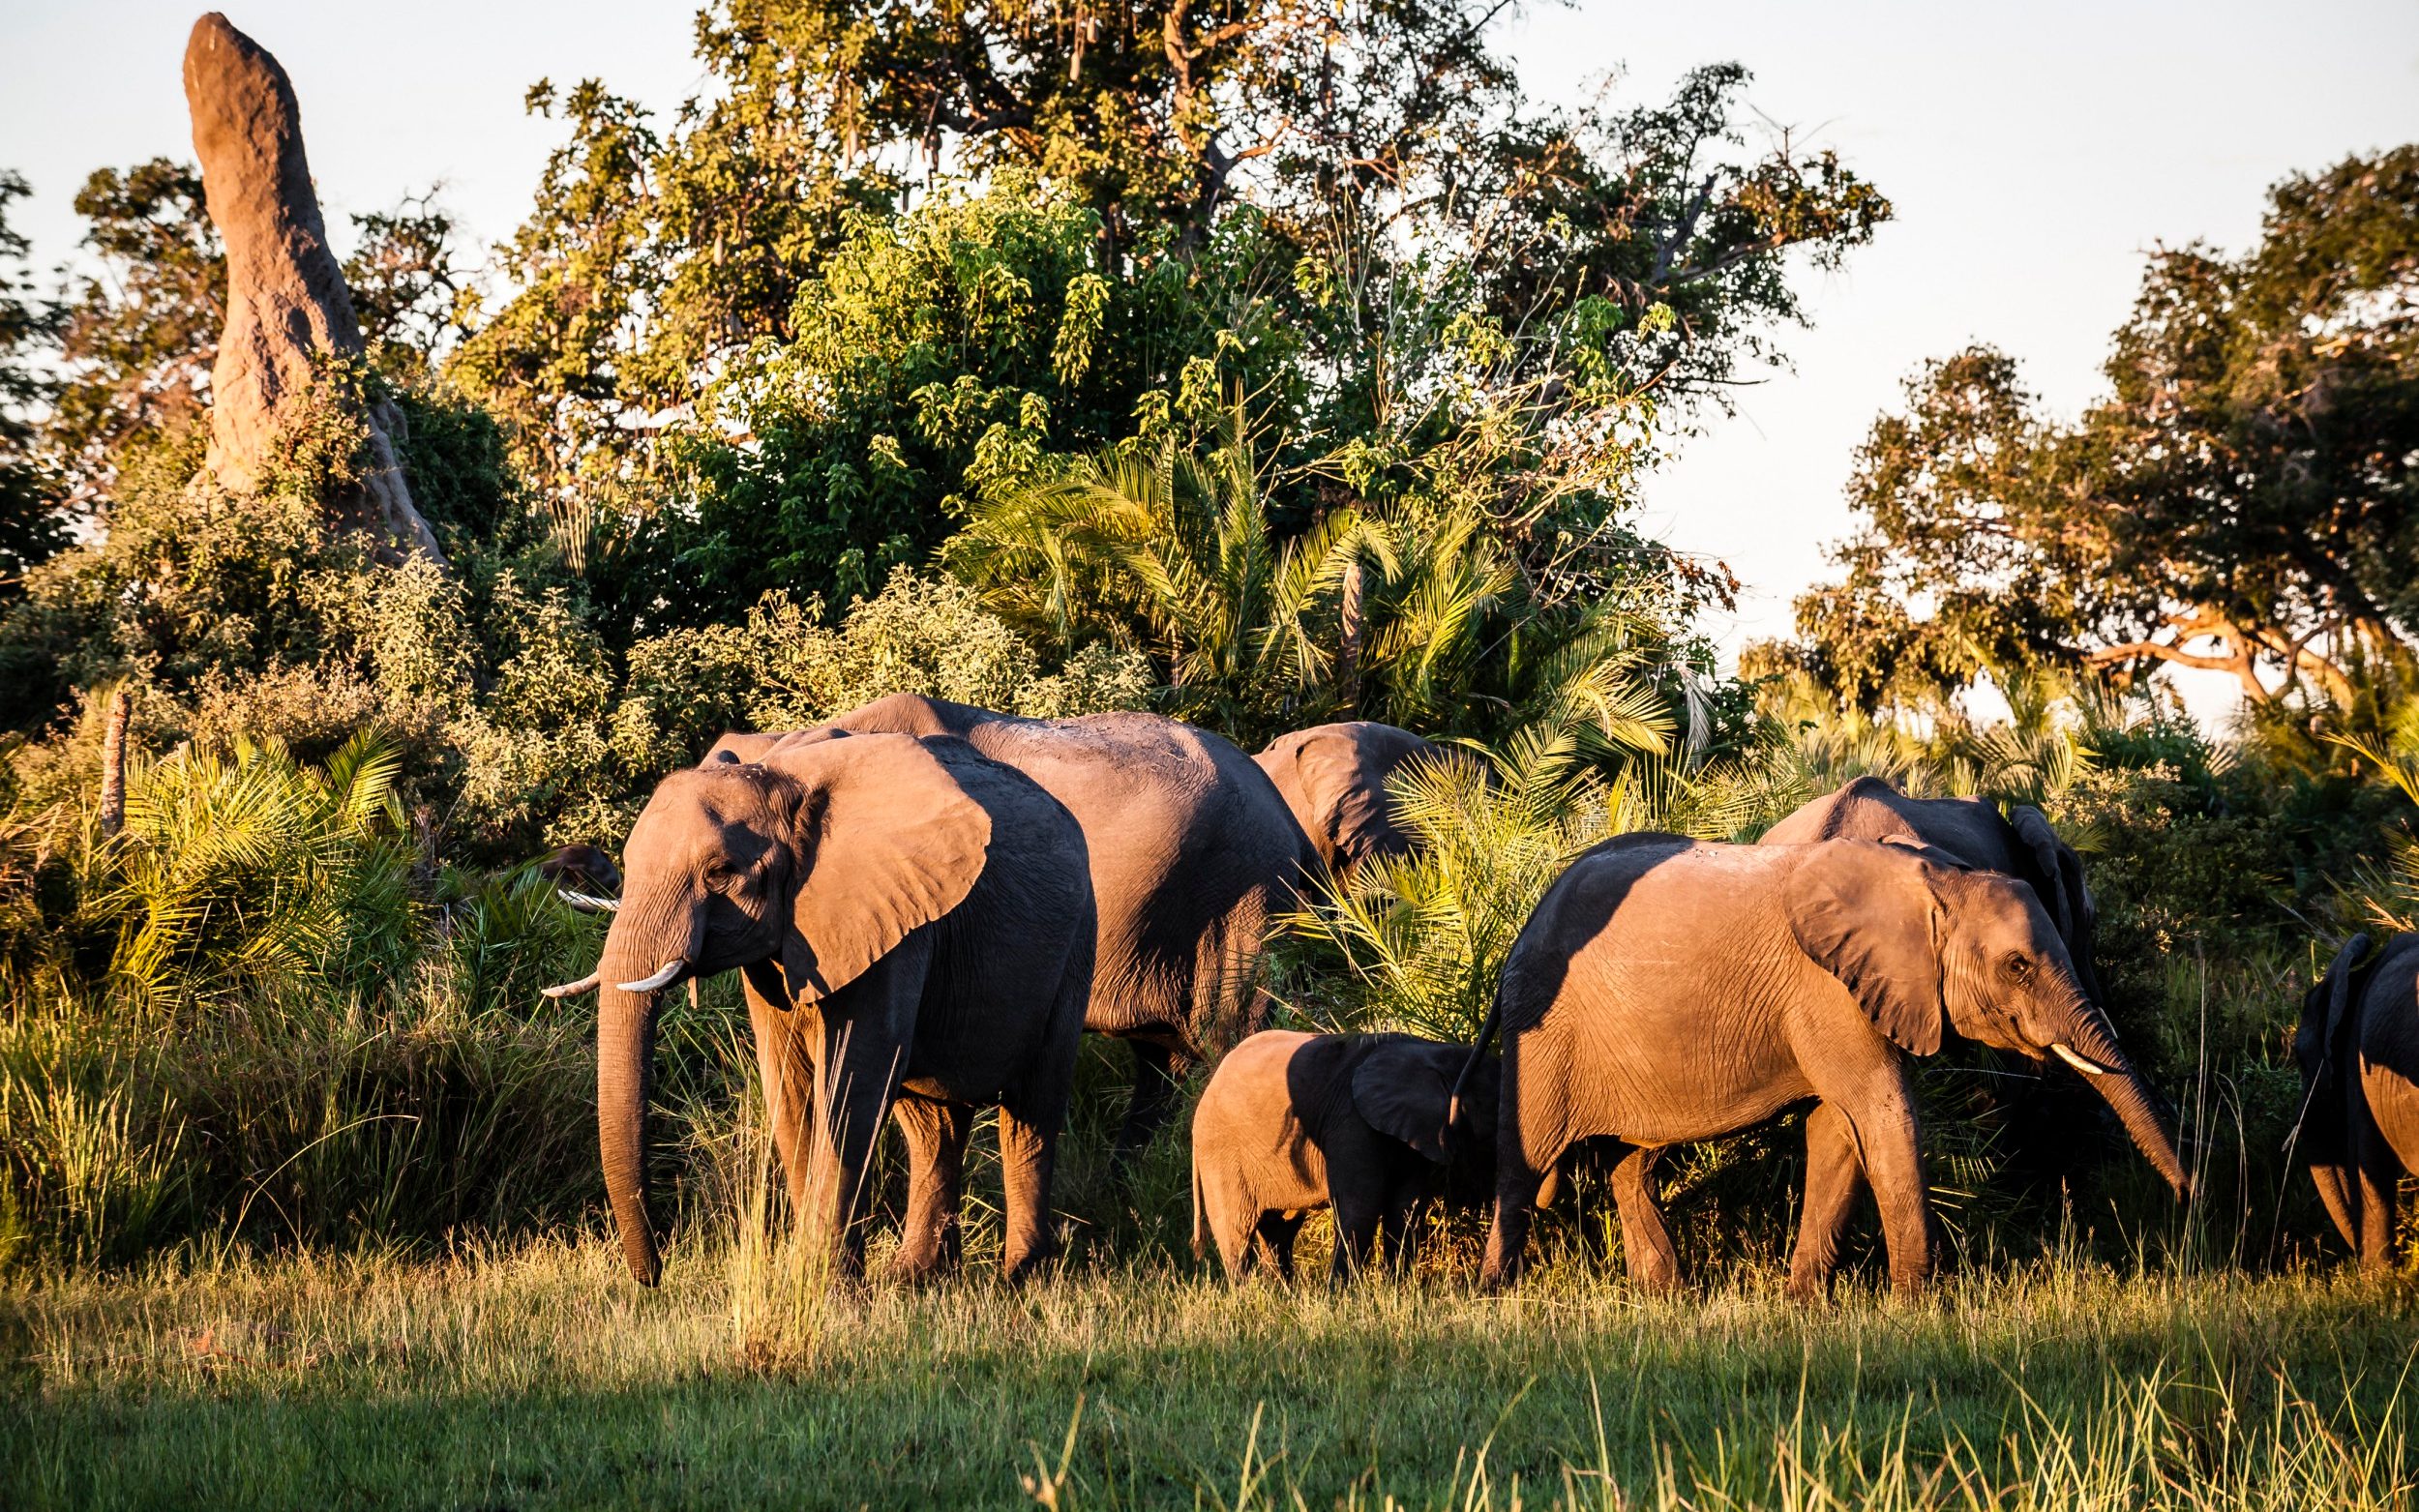 scores of elephants killed in botswana amid poaching surge